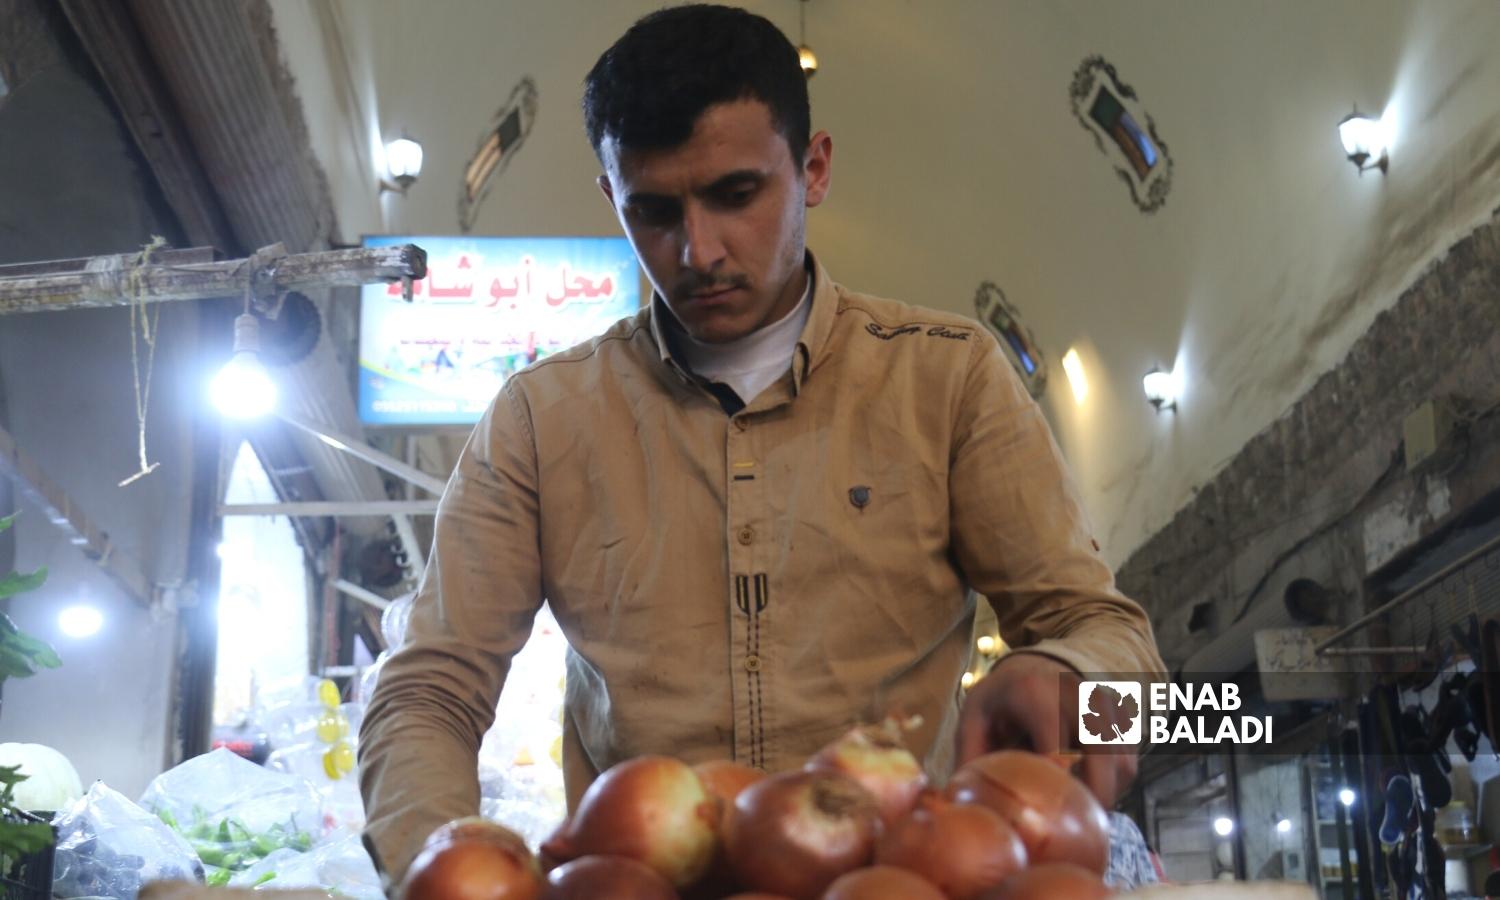  رجل يشتري البصل في السوق المسقوف بمدينة إعزاز بريف حلب الشمالي - 2 أيلول 2022 (عنب بلدي / ديان جنباز)